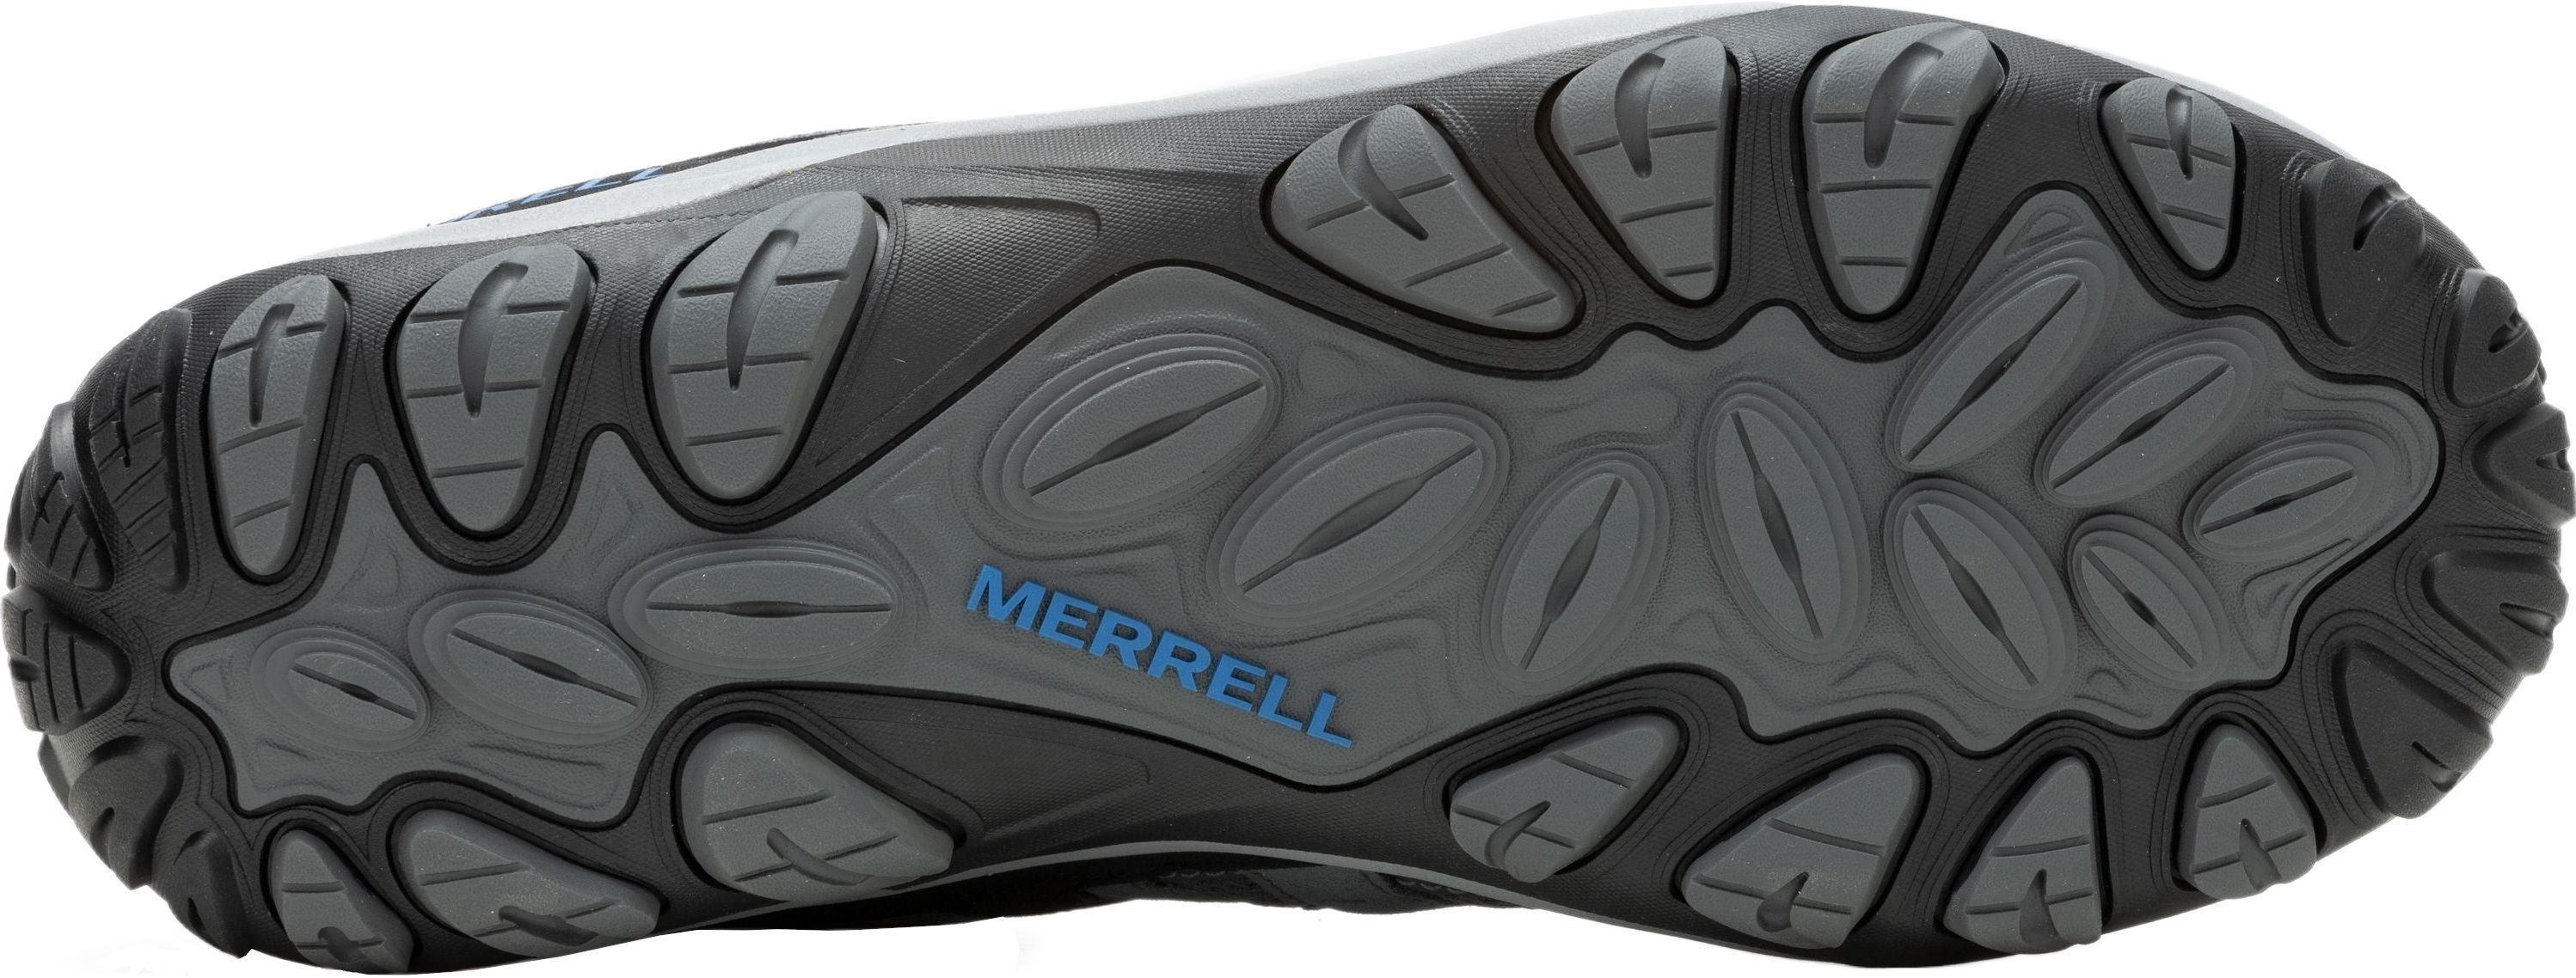 Кроссовки мужские Merrell Accentor 3 Rock/Blue 44.5 серый/синий фото 6